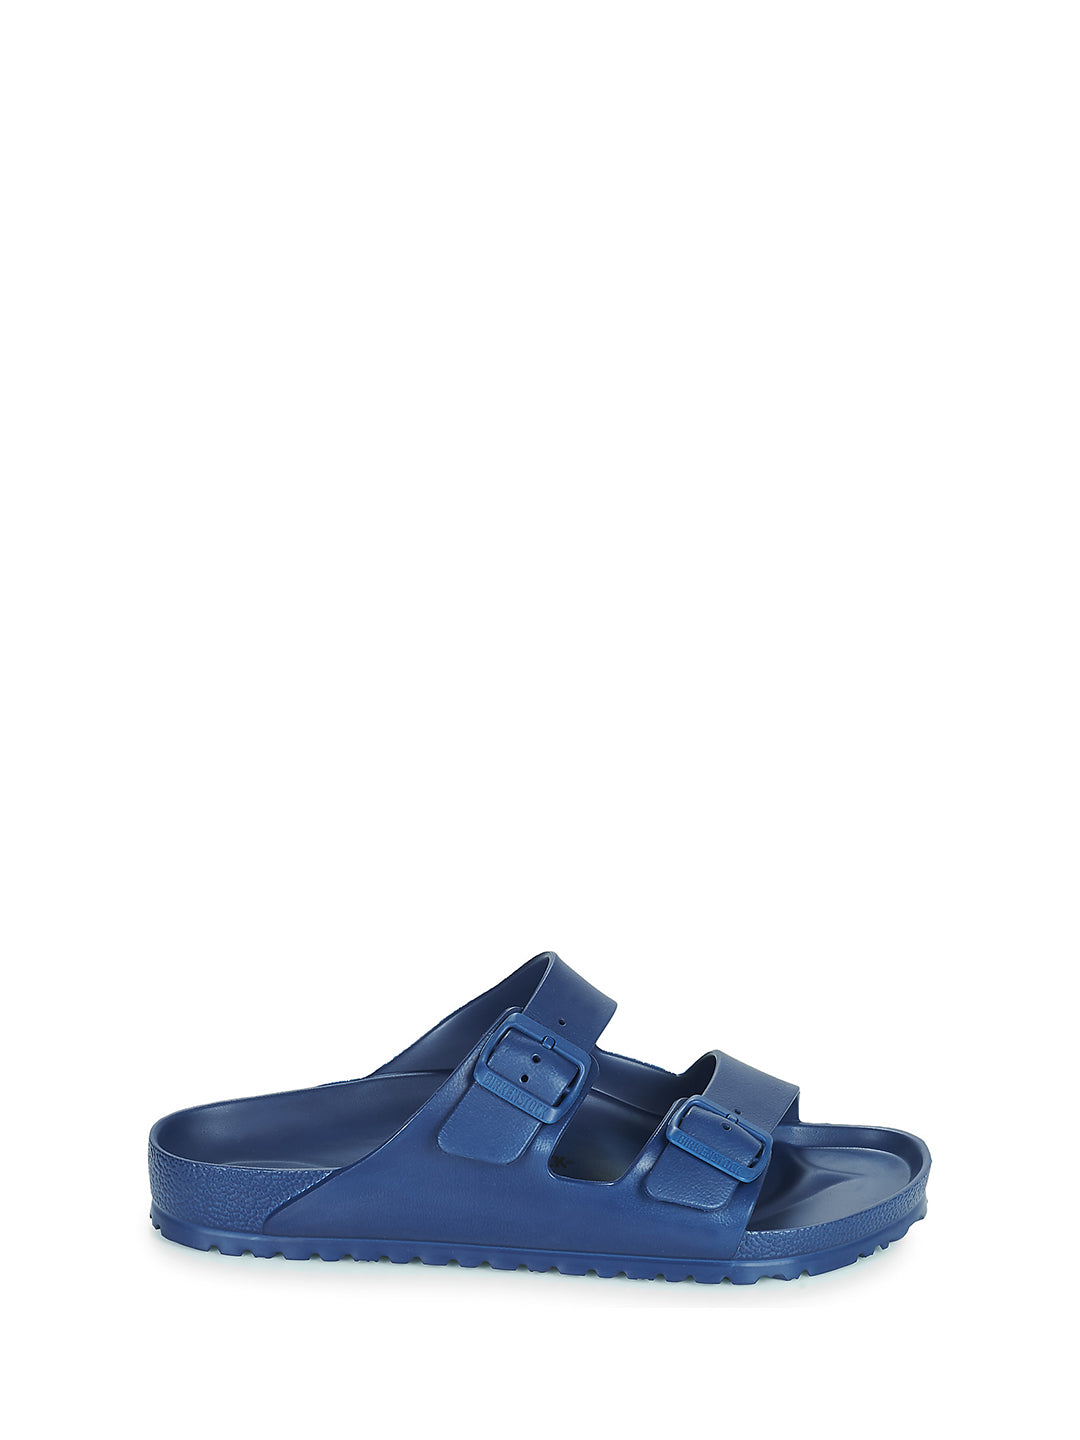 Birkenstock Arizona sandali blu in gomma Eva